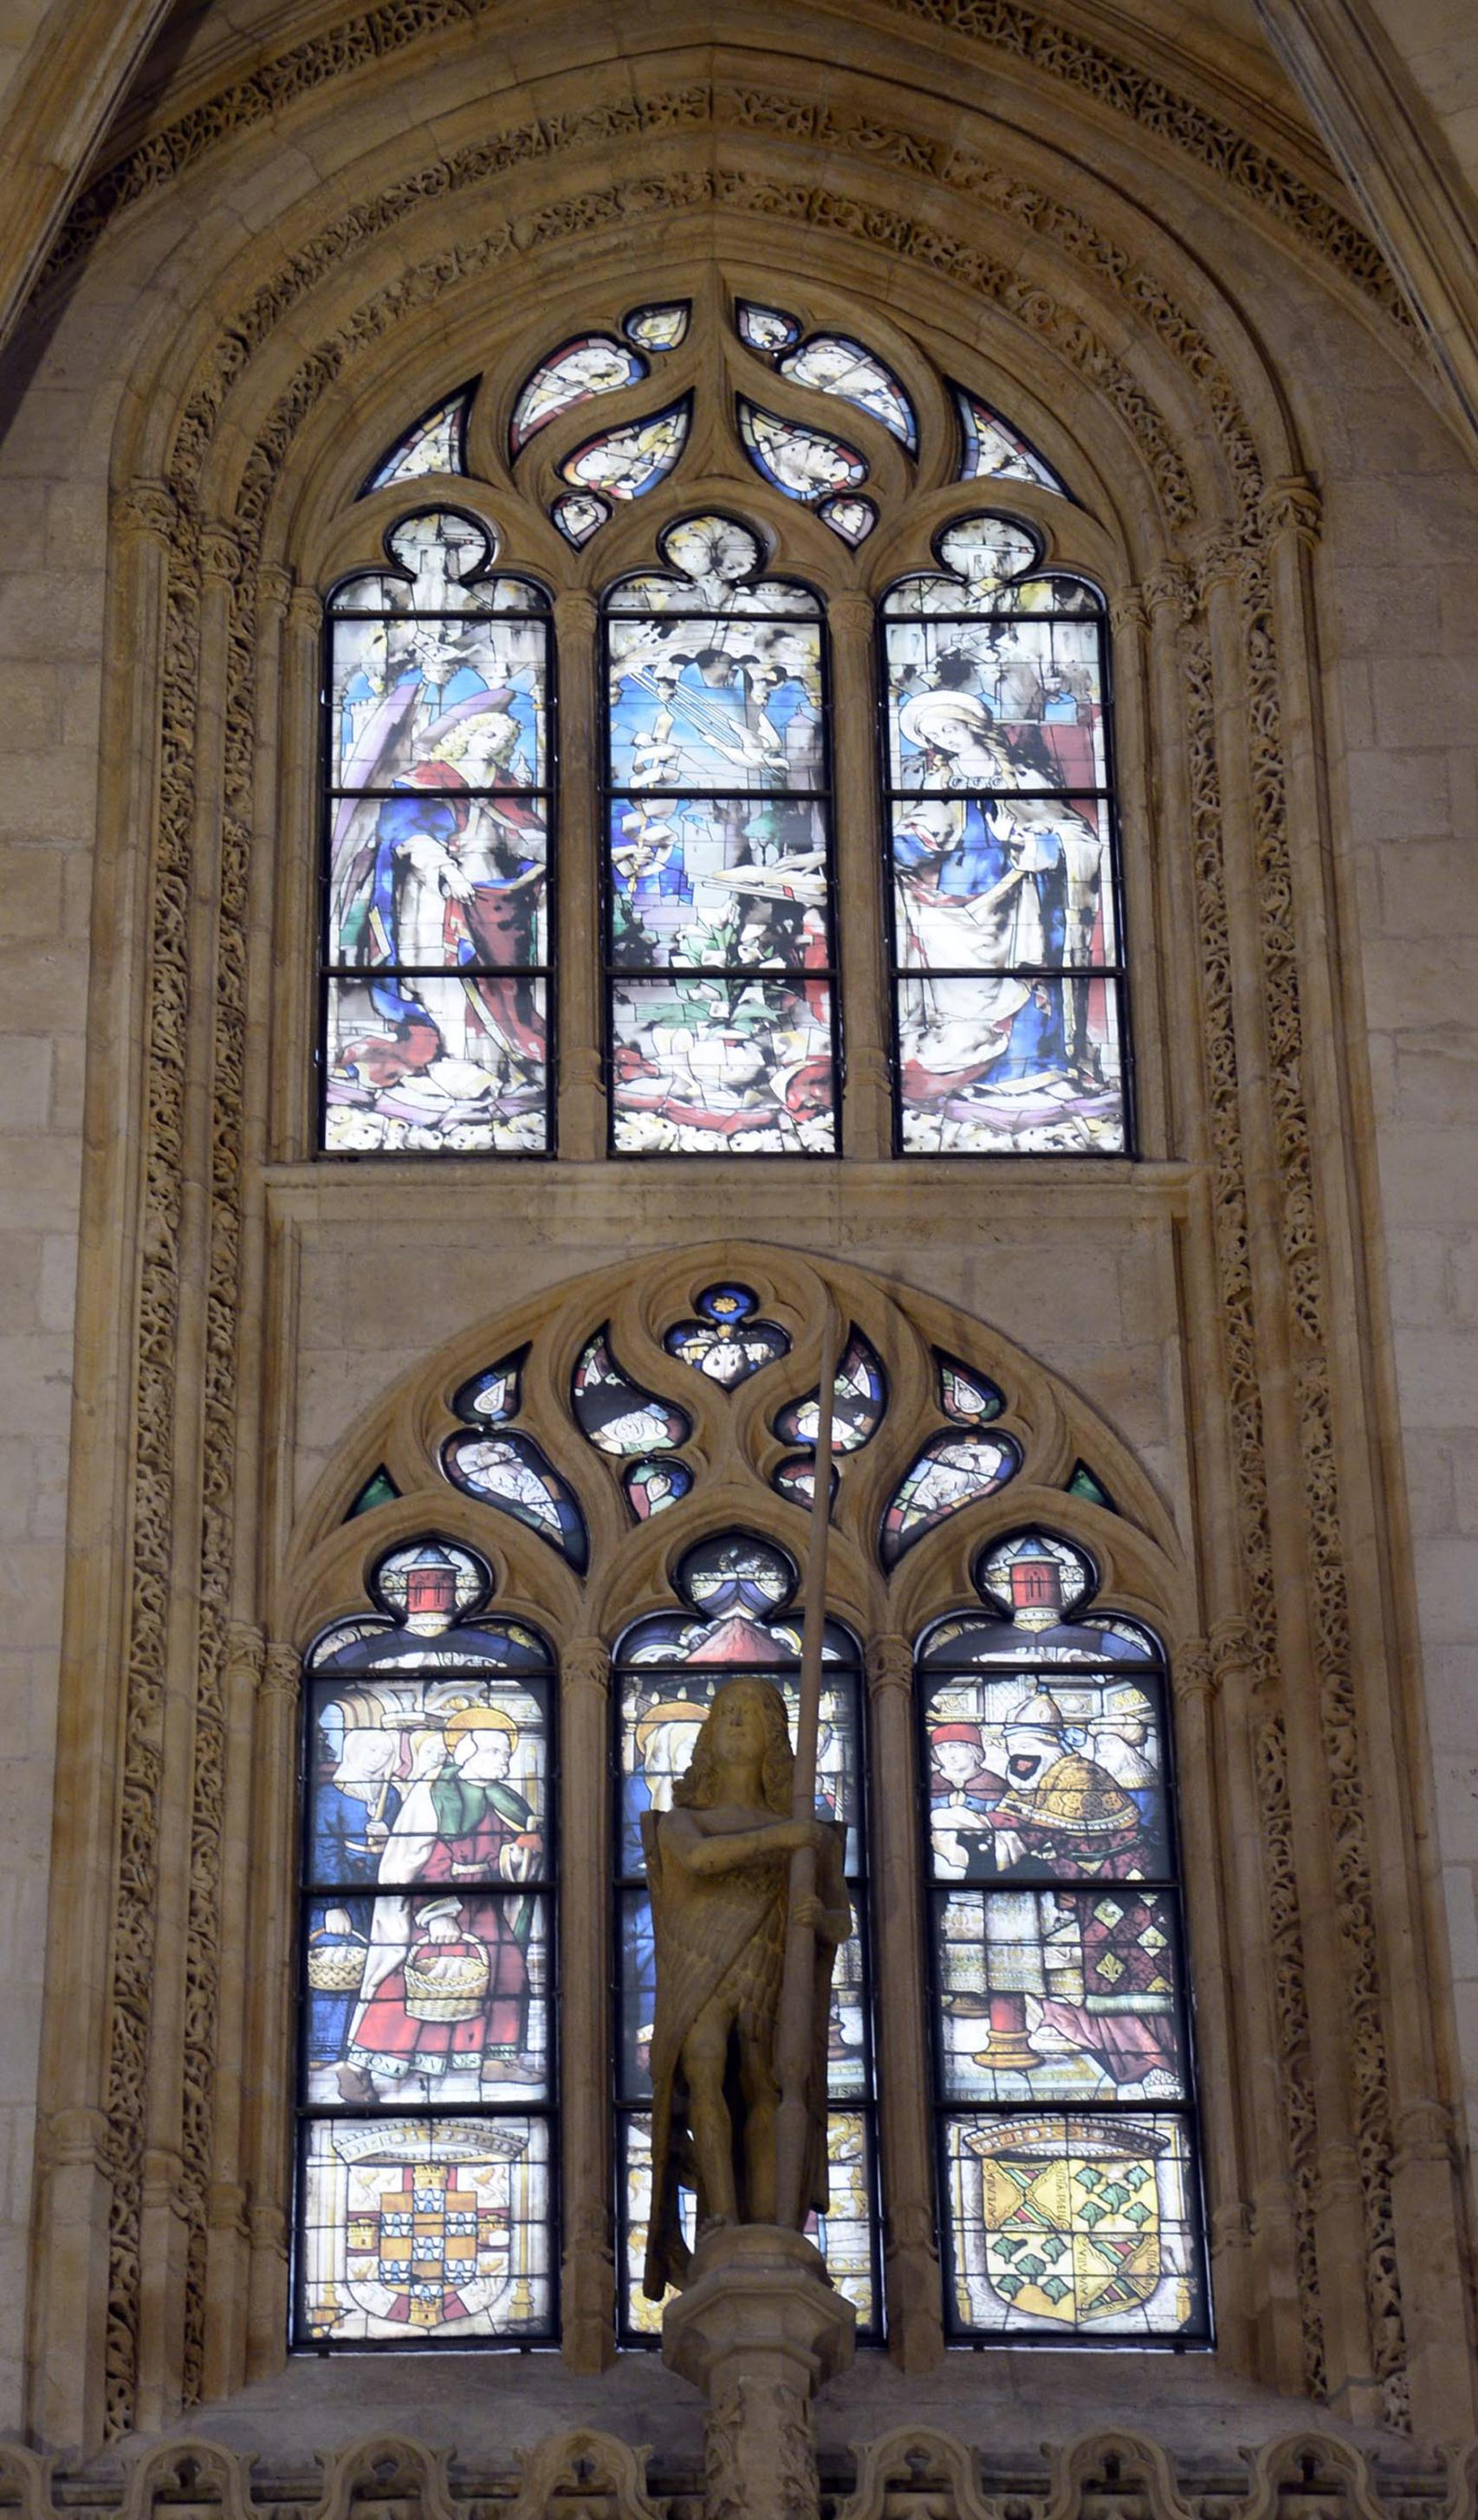 Capilla de los Condestables en la Catedral de Burgos